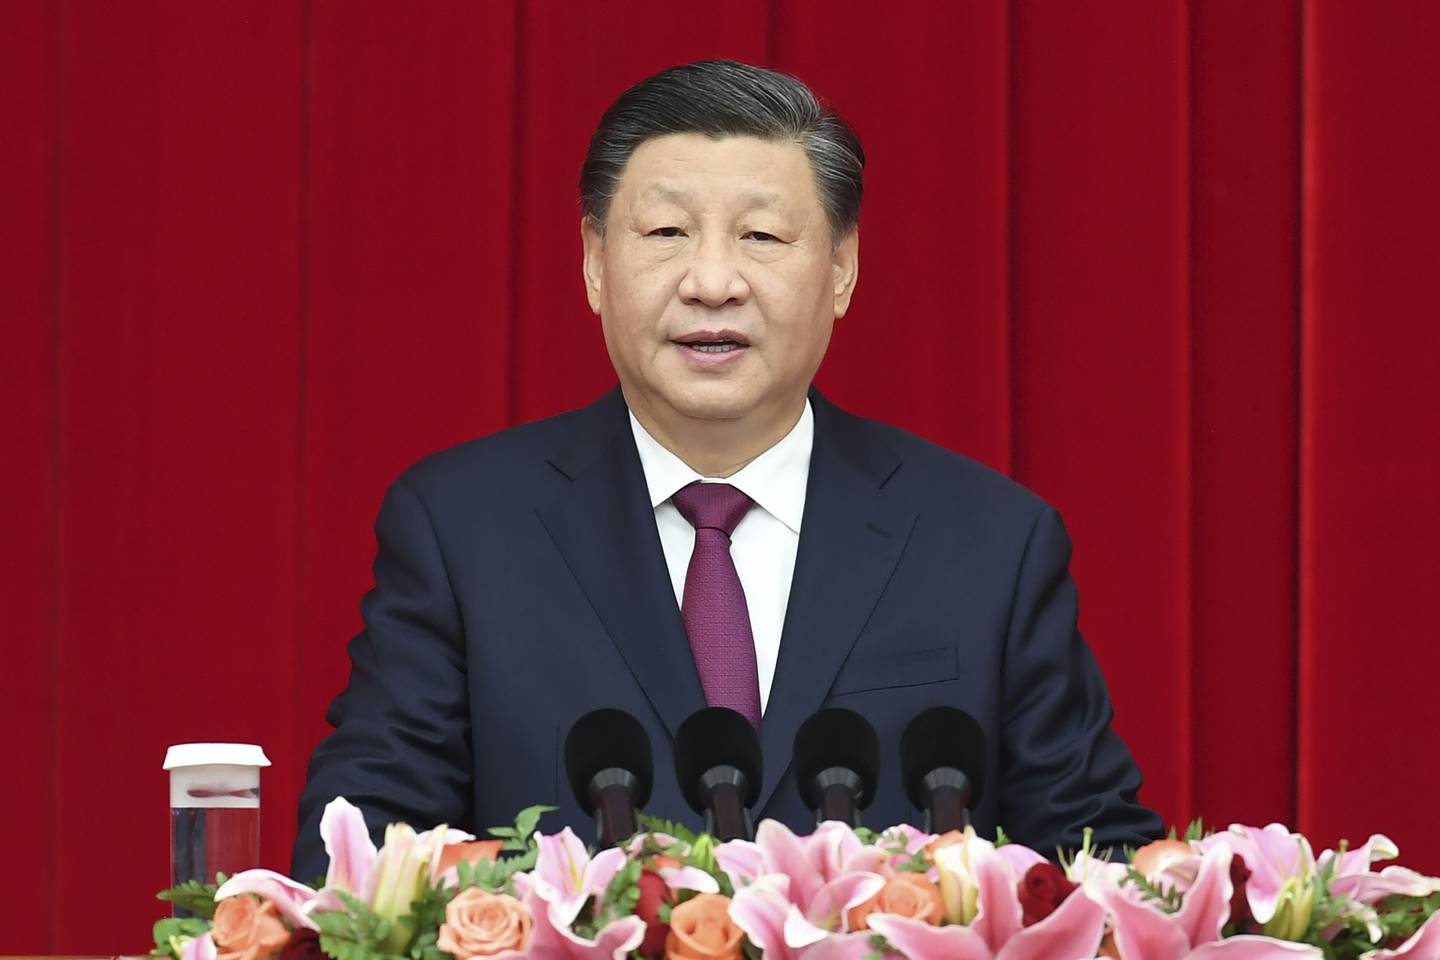 Xi Jinping denuncia represión y supresión de Occidente hacia su país, eso genera severos desafíos